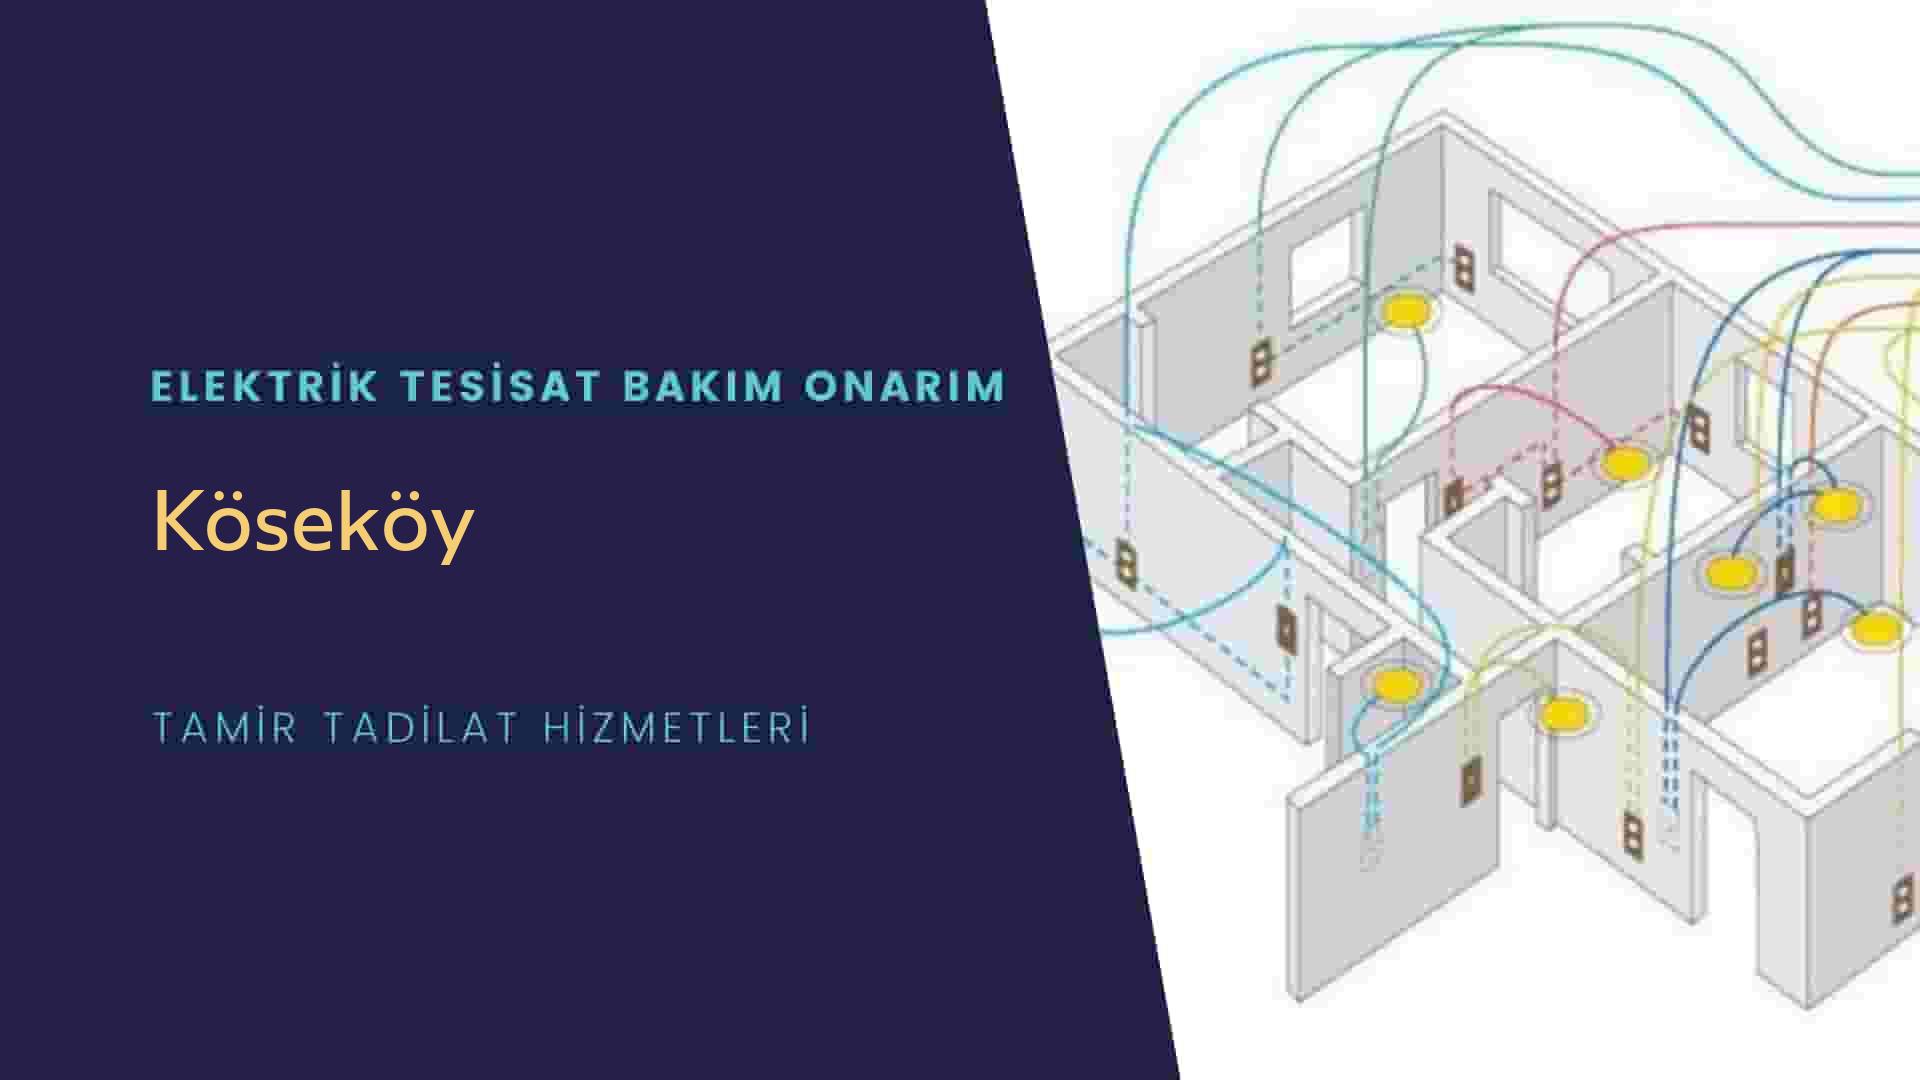 Köseköy'de elektrik tesisatı ustalarımı arıyorsunuz doğru adrestenizi Köseköy elektrik tesisatı ustalarımız 7/24 sizlere hizmet vermekten mutluluk duyar.